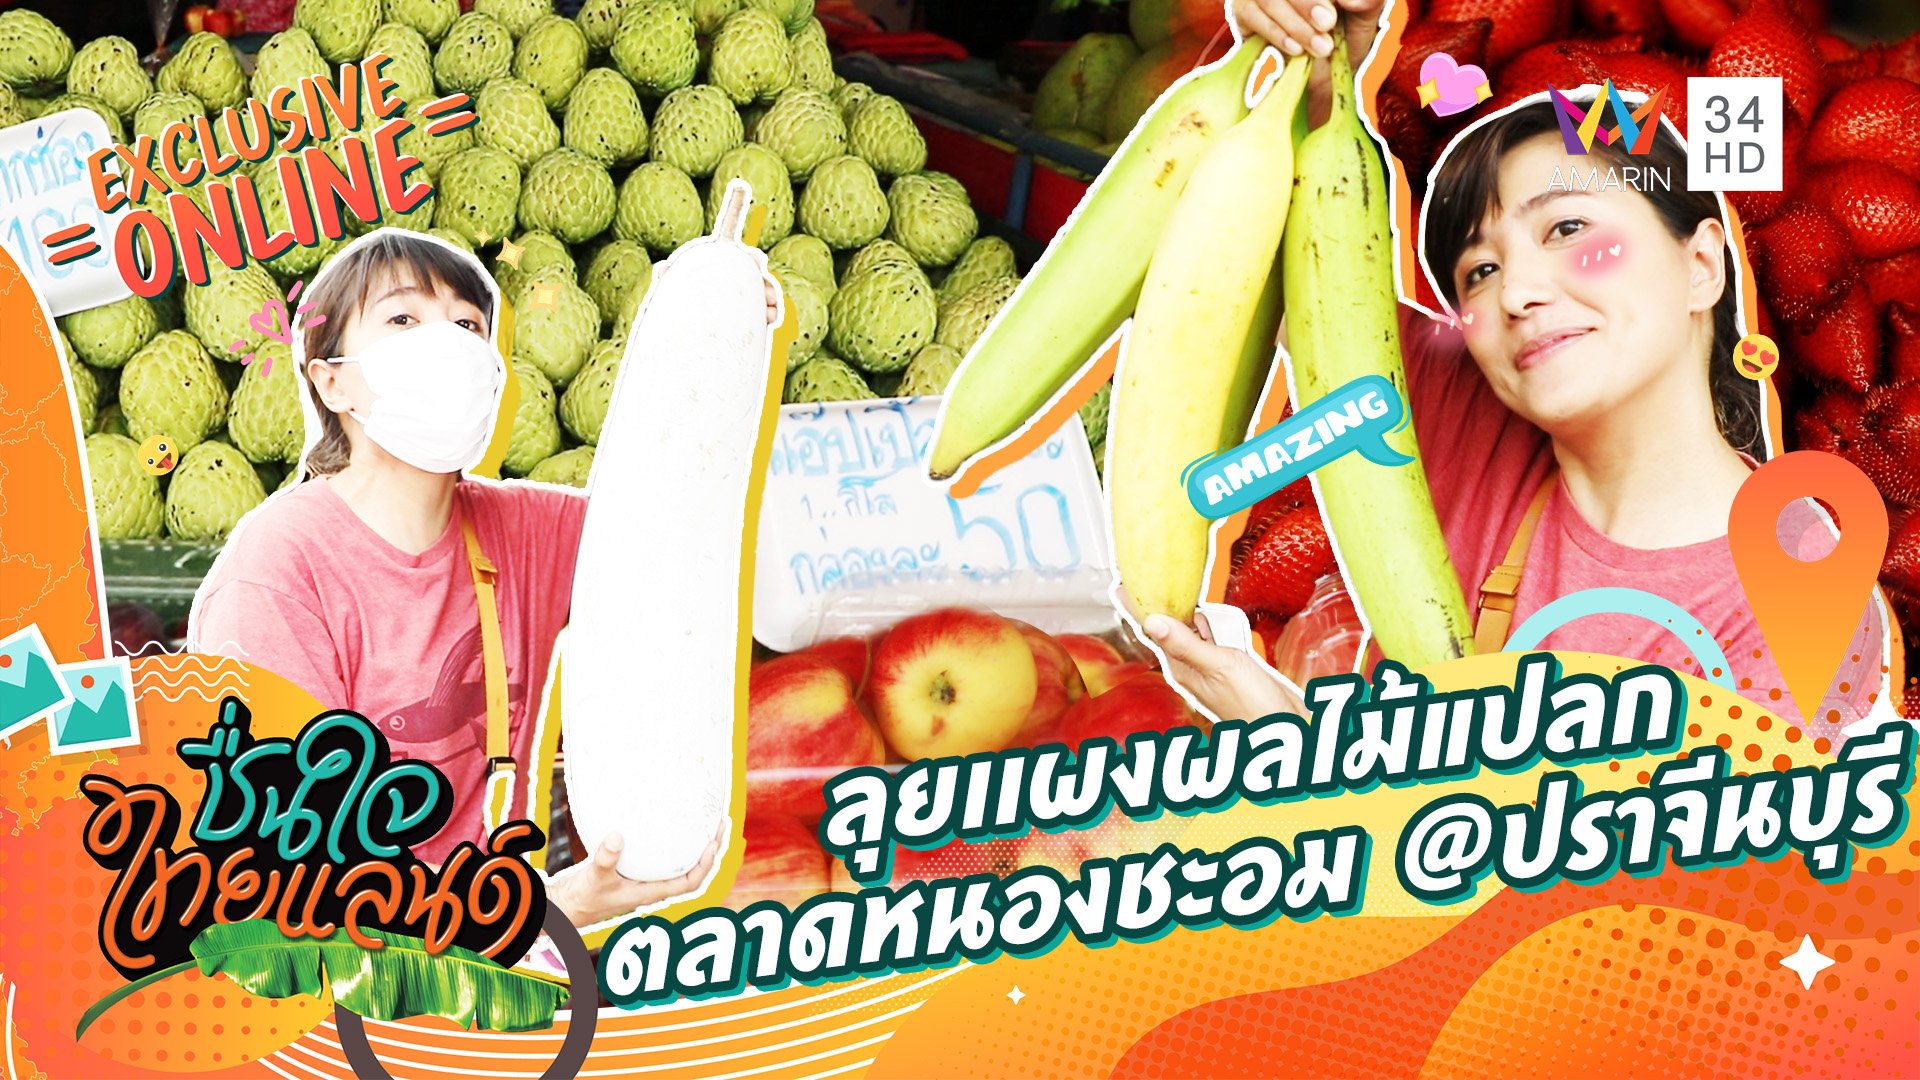 ลุยเเผงผลไม้แปลก ตลาดหนองชะอม @ปราจีนบุรี | ชื่นใจไทยแลนด์ | 14 ก.ย. 65 | AMARIN TVHD34